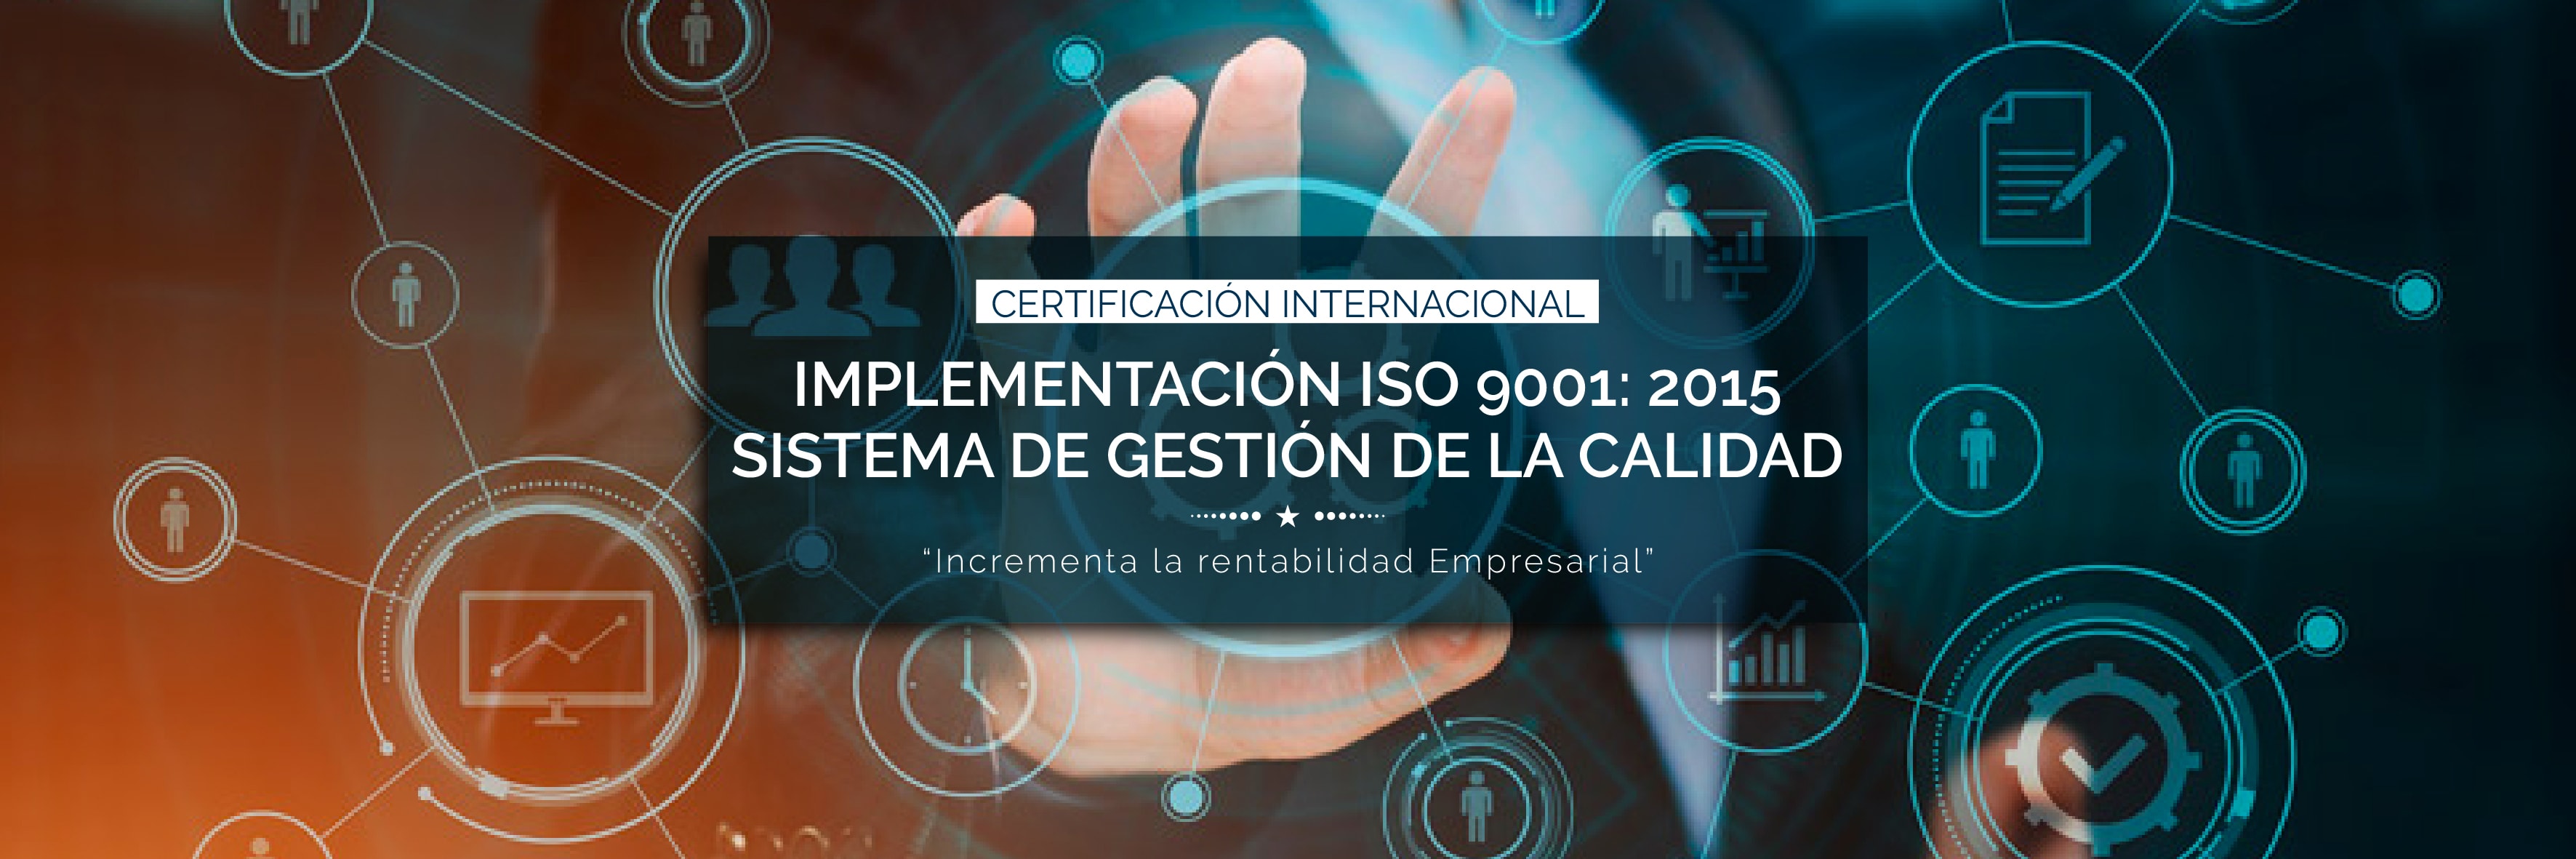 Certificación Internacional Implementación ISO 9001 2015 Sistema de Gestión de la calidad